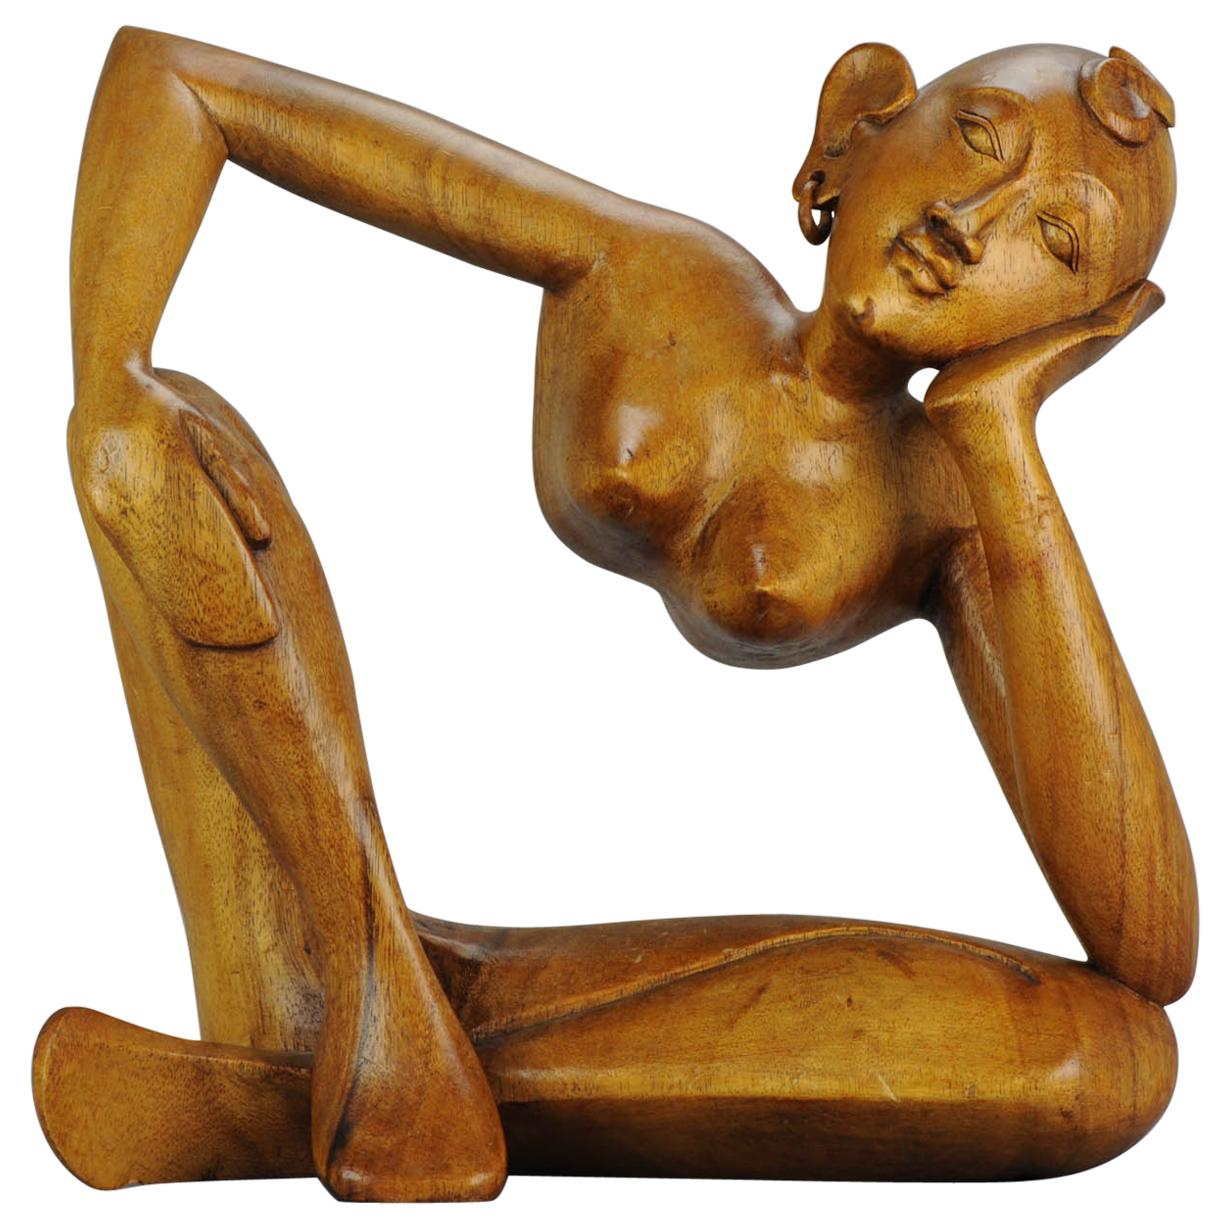 Statue de femme sculptée en bois balinaise Art Déco du milieu du 20e siècle - Bali